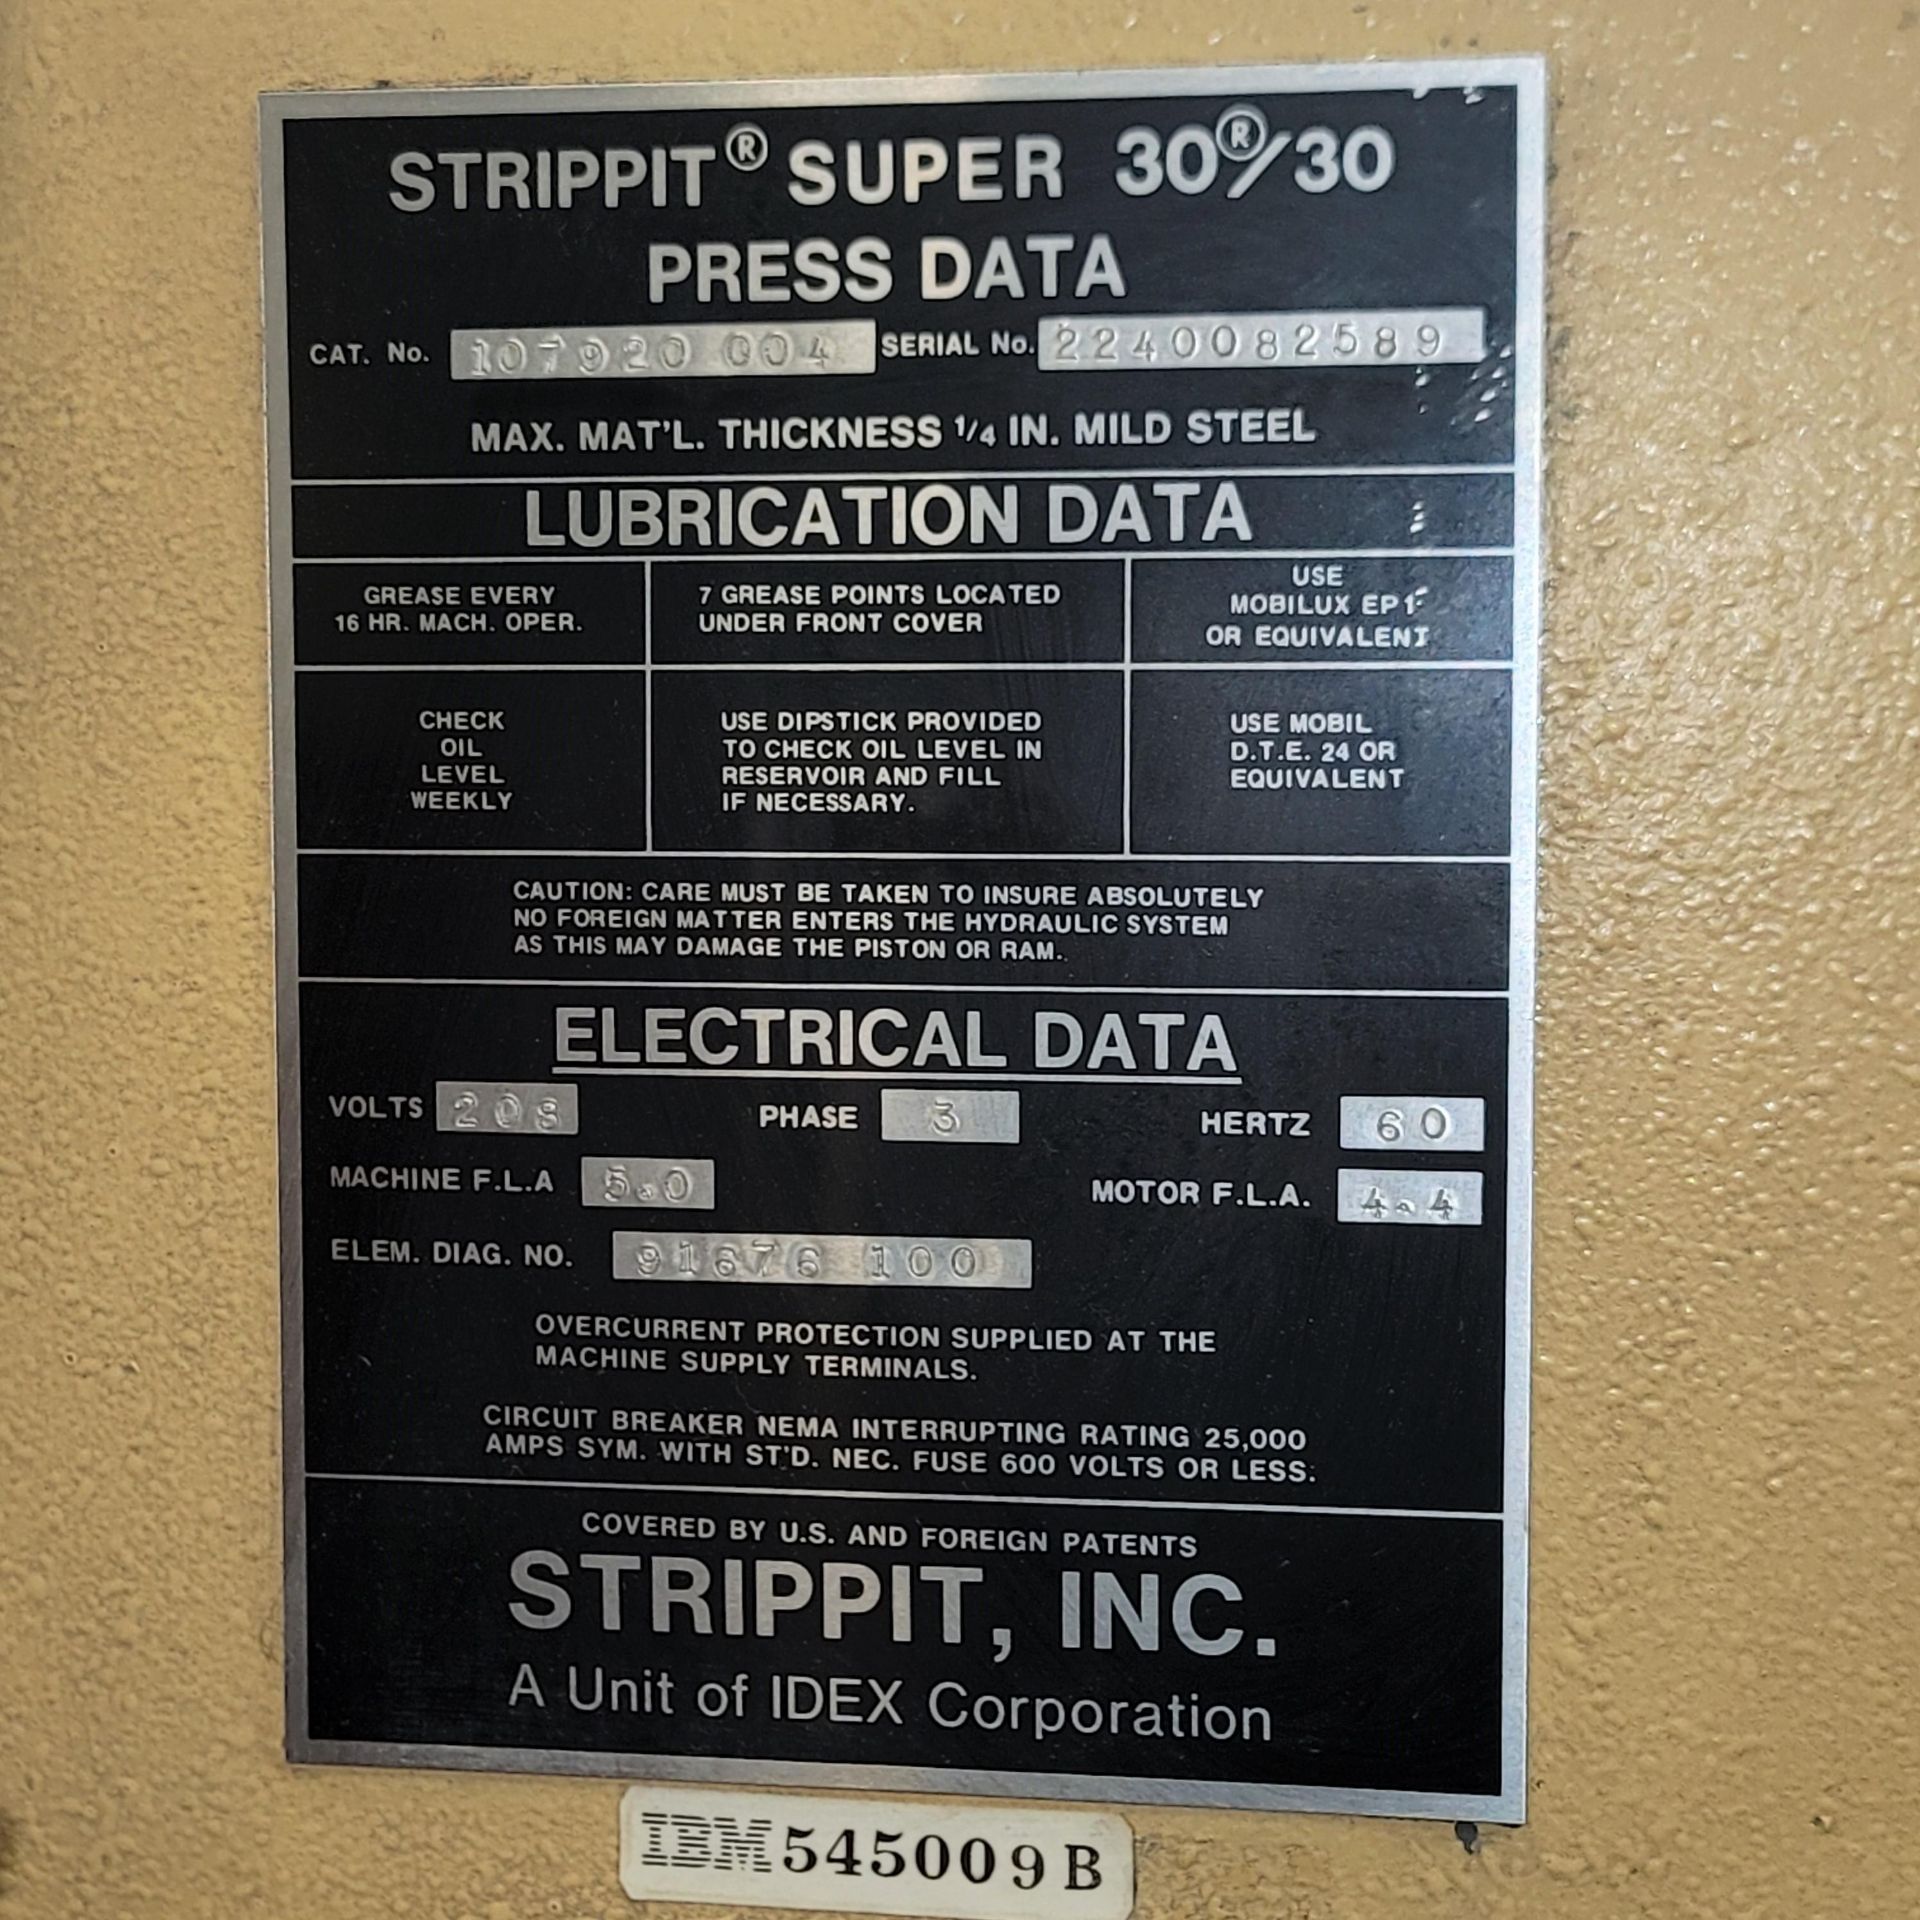 STRIPPIT SUPER 30/30 AG SINGLE-STATION PUNCH PRESS, CAT. NO. 107920 004, S/N 2240082589, PC CONTROLS - Bild 6 aus 10